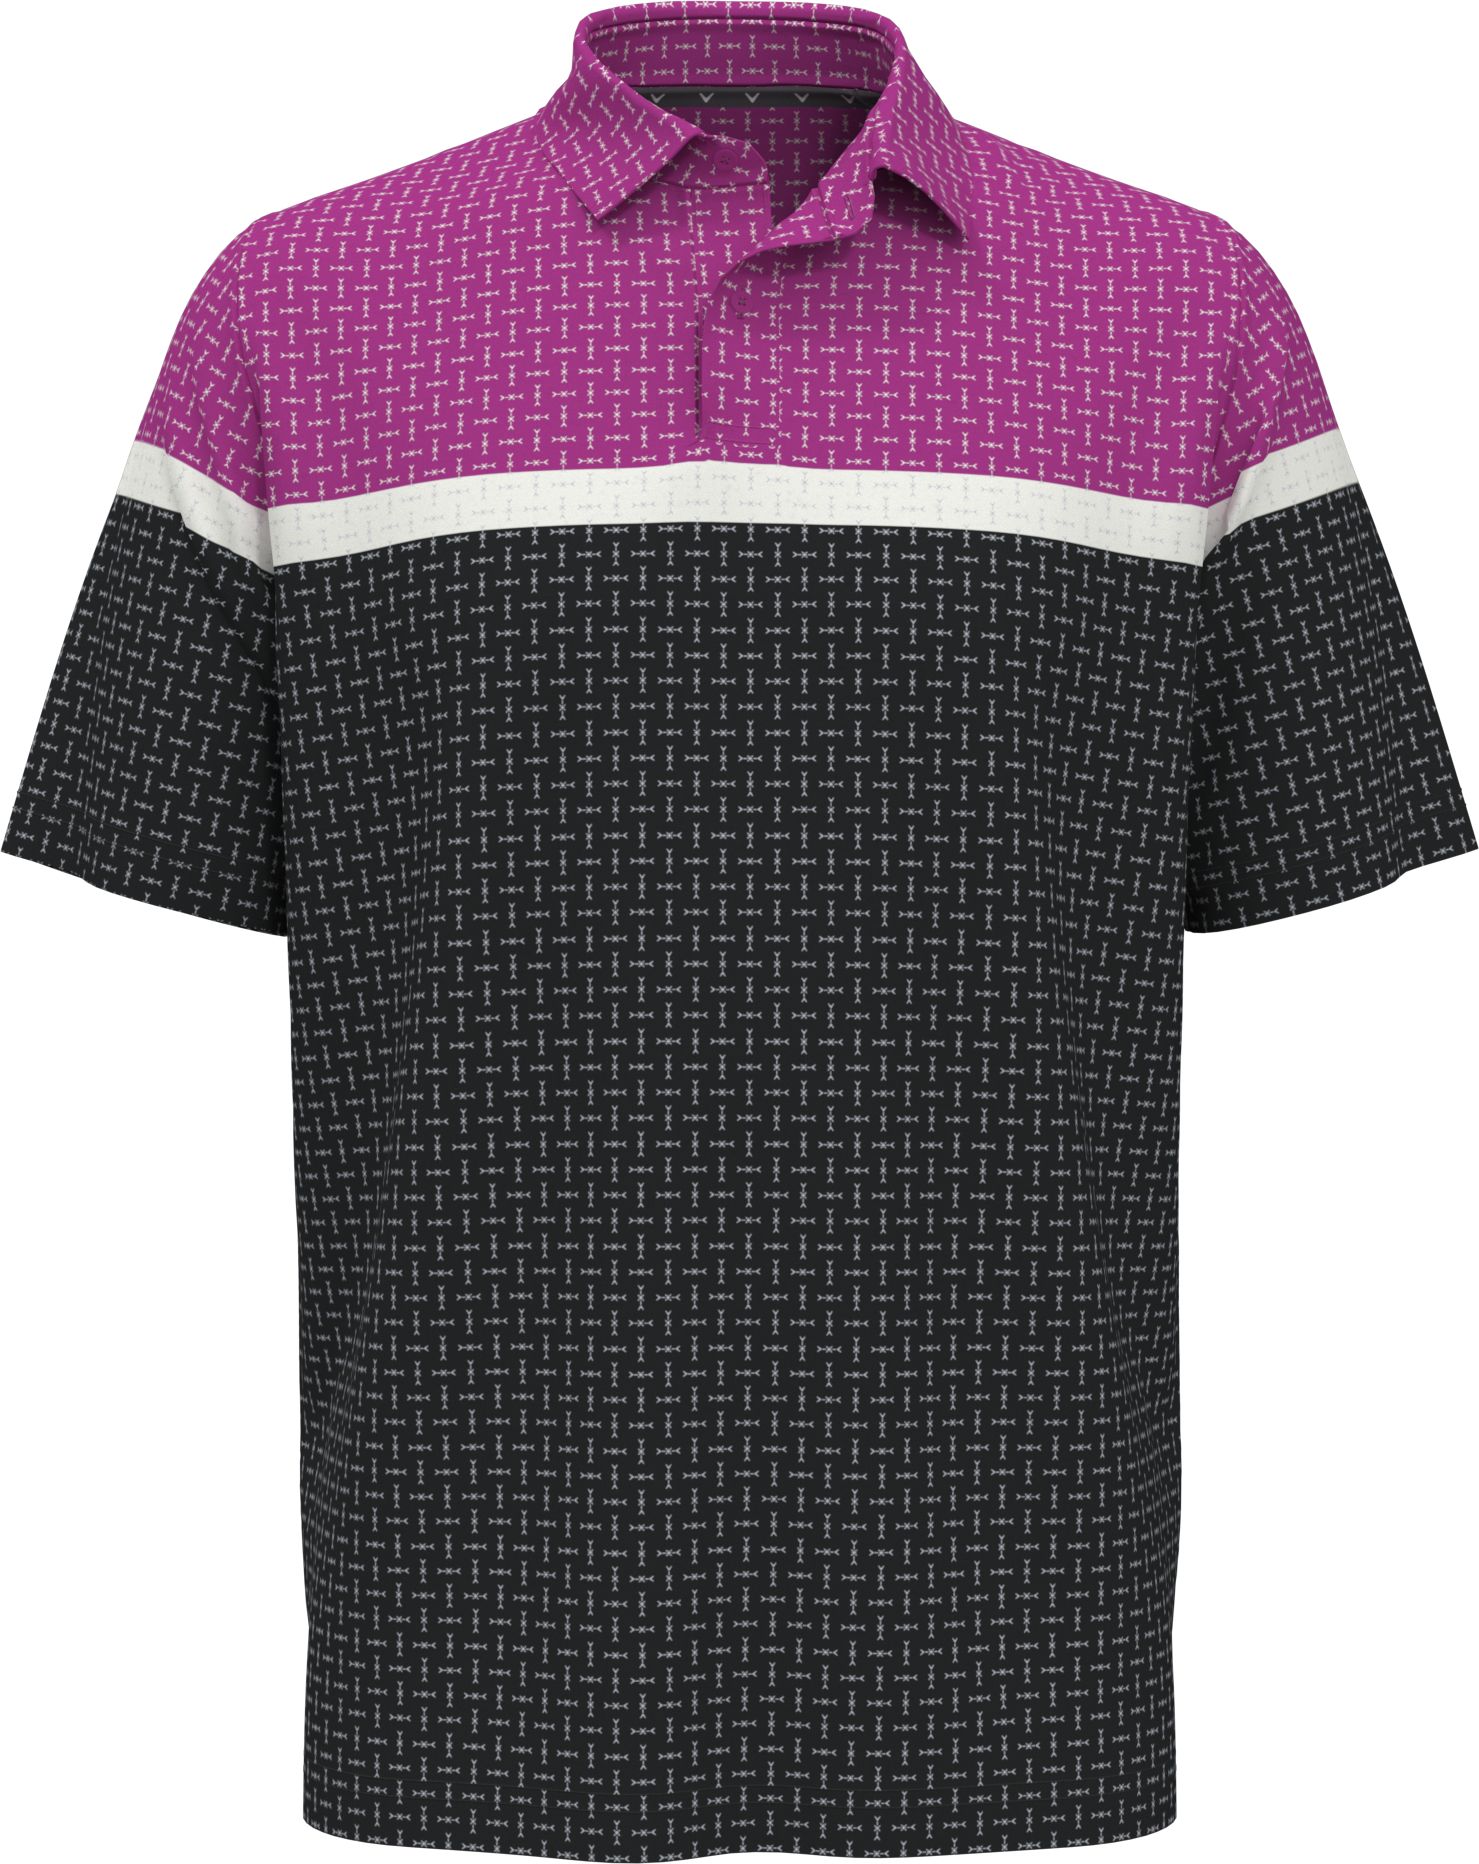 Callaway Classic Geo Print pánské golfové triko, fialové/tmavě šedé, vel. L